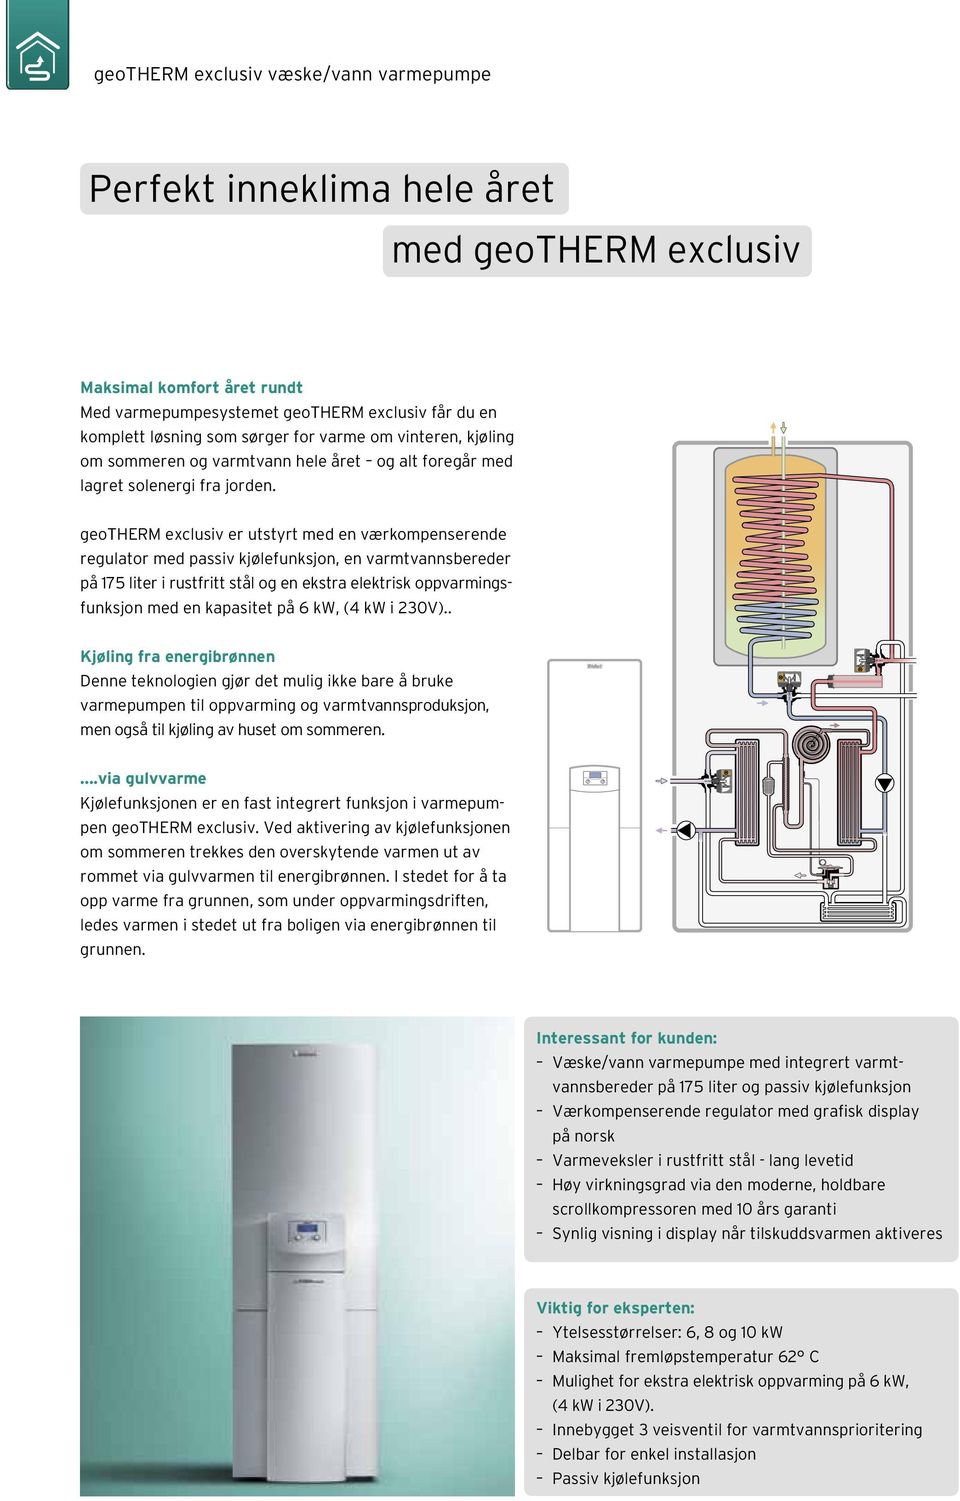 pump motor geotherm exclusiv er utstyrt med en værkompenserende regulator med passiv kjølefunksjon, en varmtvannsbereder på 175 liter i rustfritt stål og en ekstra elektrisk oppvarmingsfunksjon med